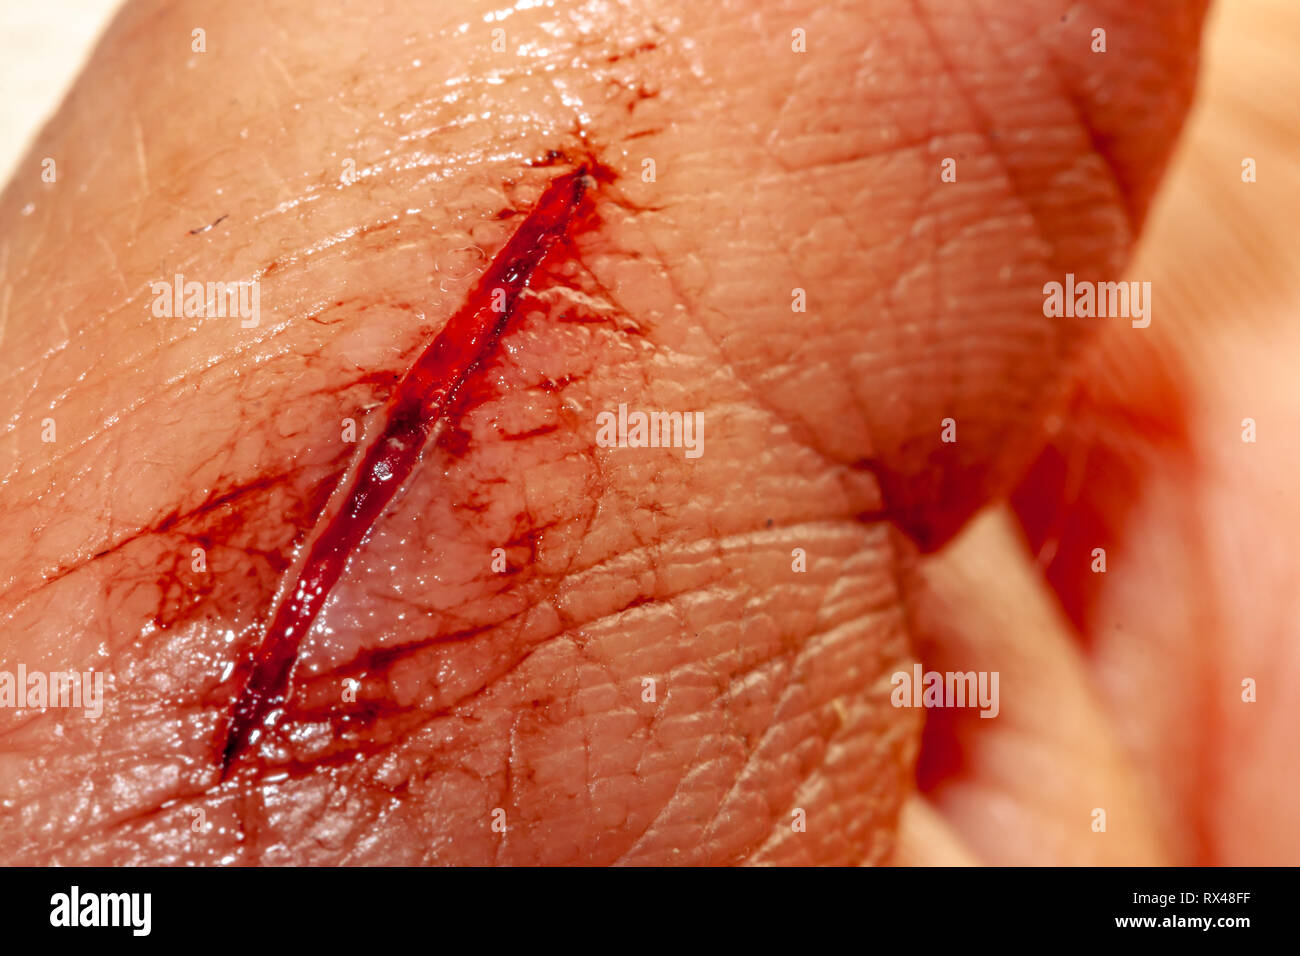 Ein Foto von einer Reihe von Fotos aufgenommen von einem frischen Blutungen schnitt Entwicklung über einen priod von 90 Minuten. Stockfoto